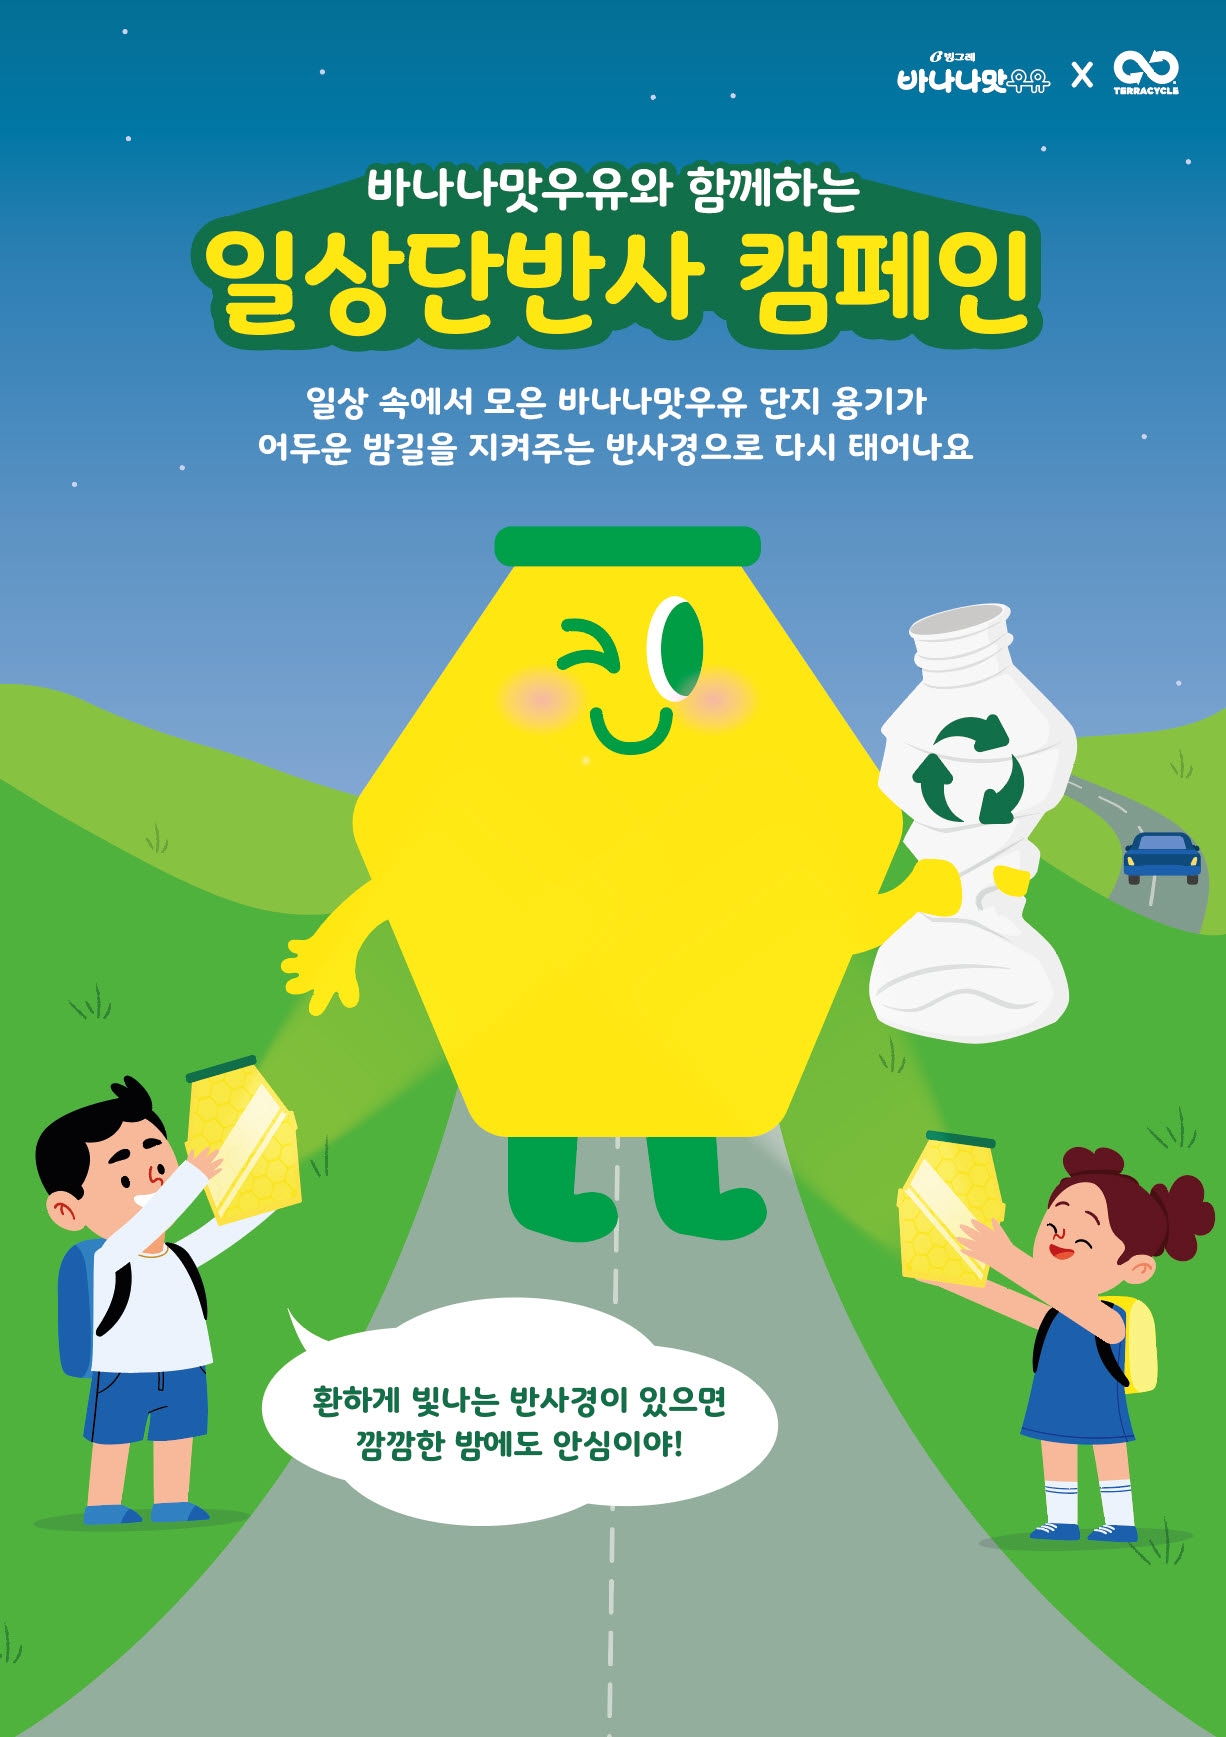 [유통이슈] 빙그레, 바나나맛우유 분리배출 ‘일상단반사’ 캠페인 실시 外